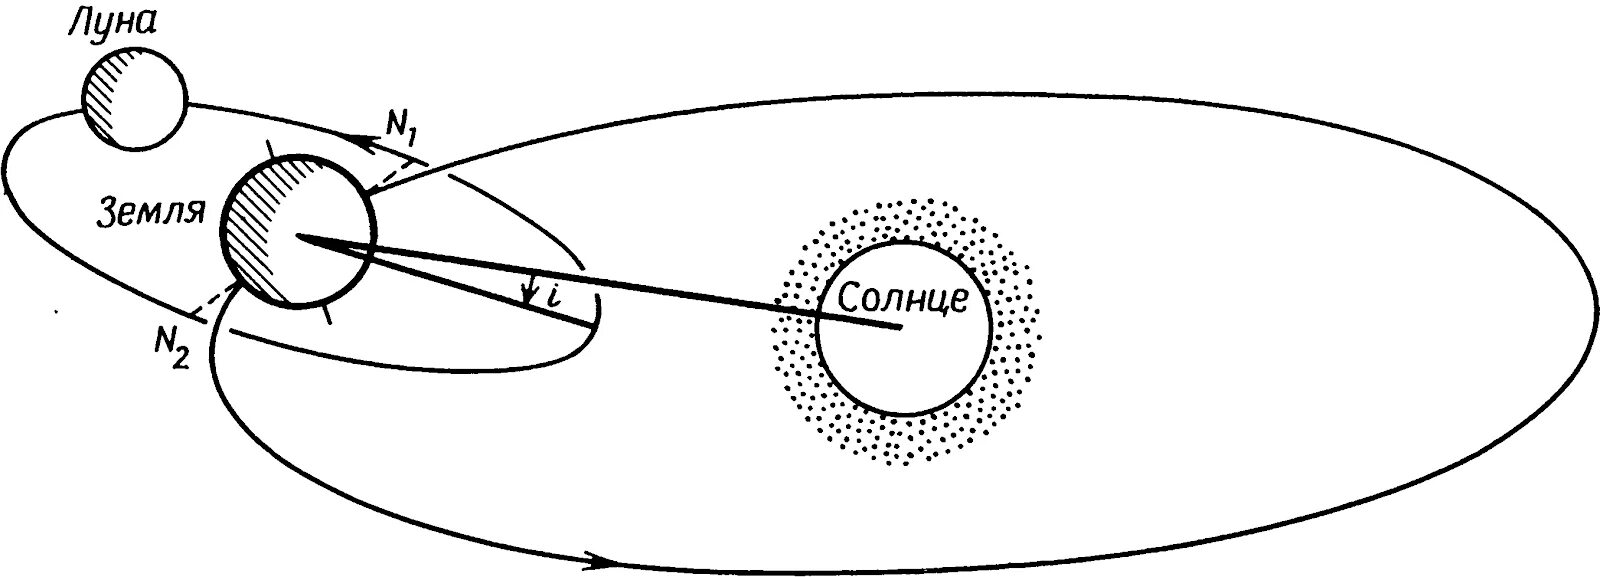 Схема движения Луны вокруг земли. Орбита движения Луны вокруг земли. Схема орбиты Луны. Схема движения Луны вокруг солнца.